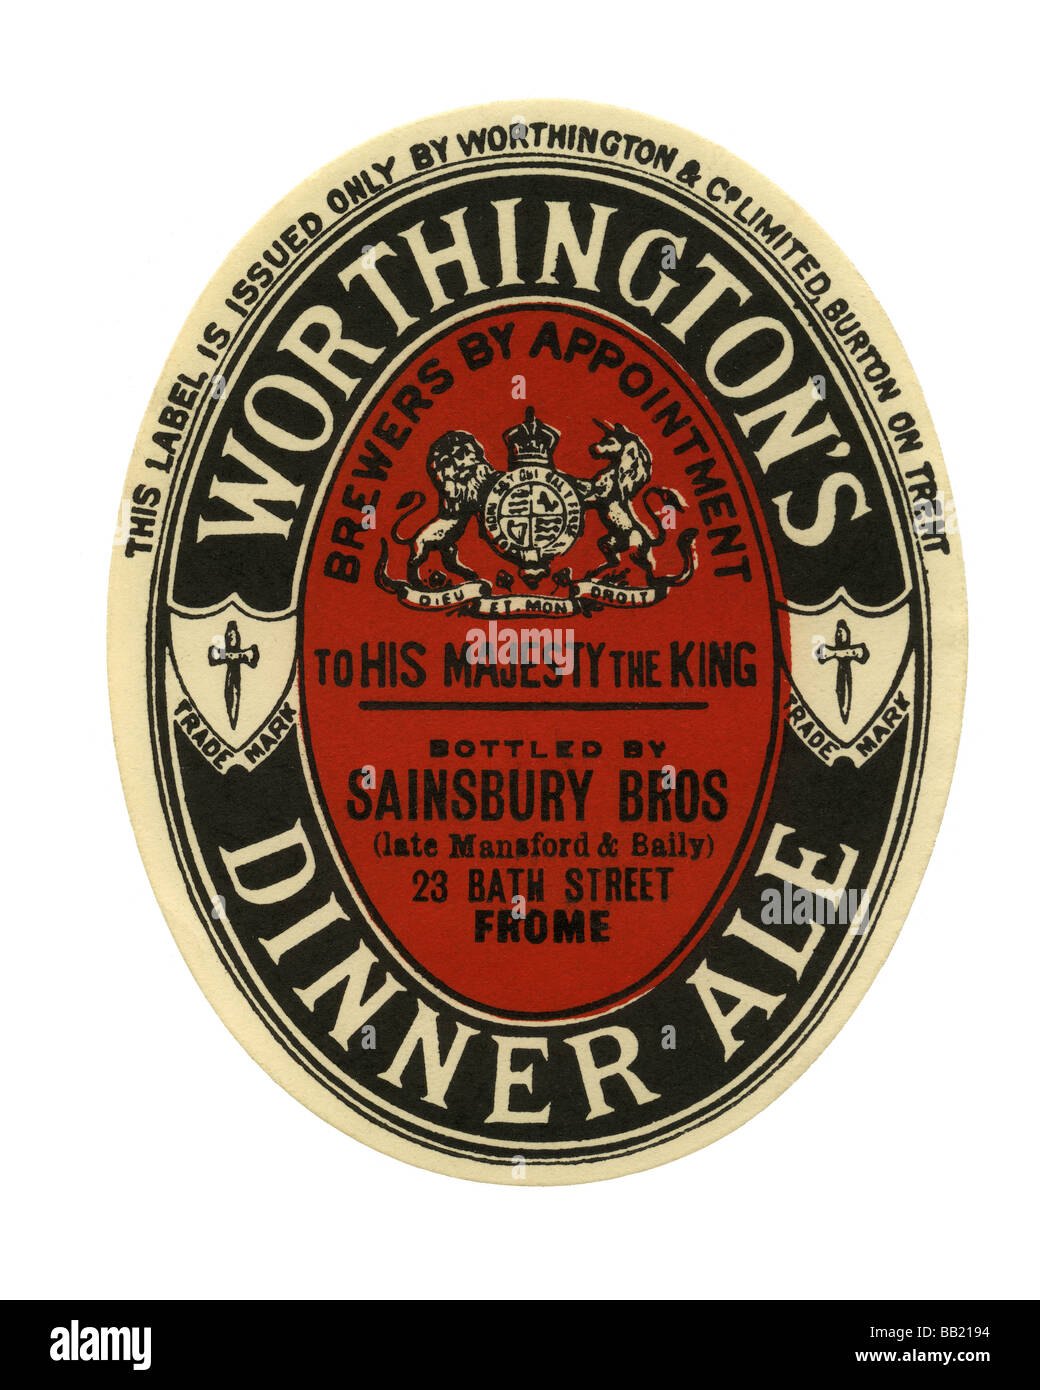 Cerveza inglesa antigua etiqueta para la cena de Worthington Ale, Burton-upon-Trent,  Staffordshire Fotografía de stock - Alamy